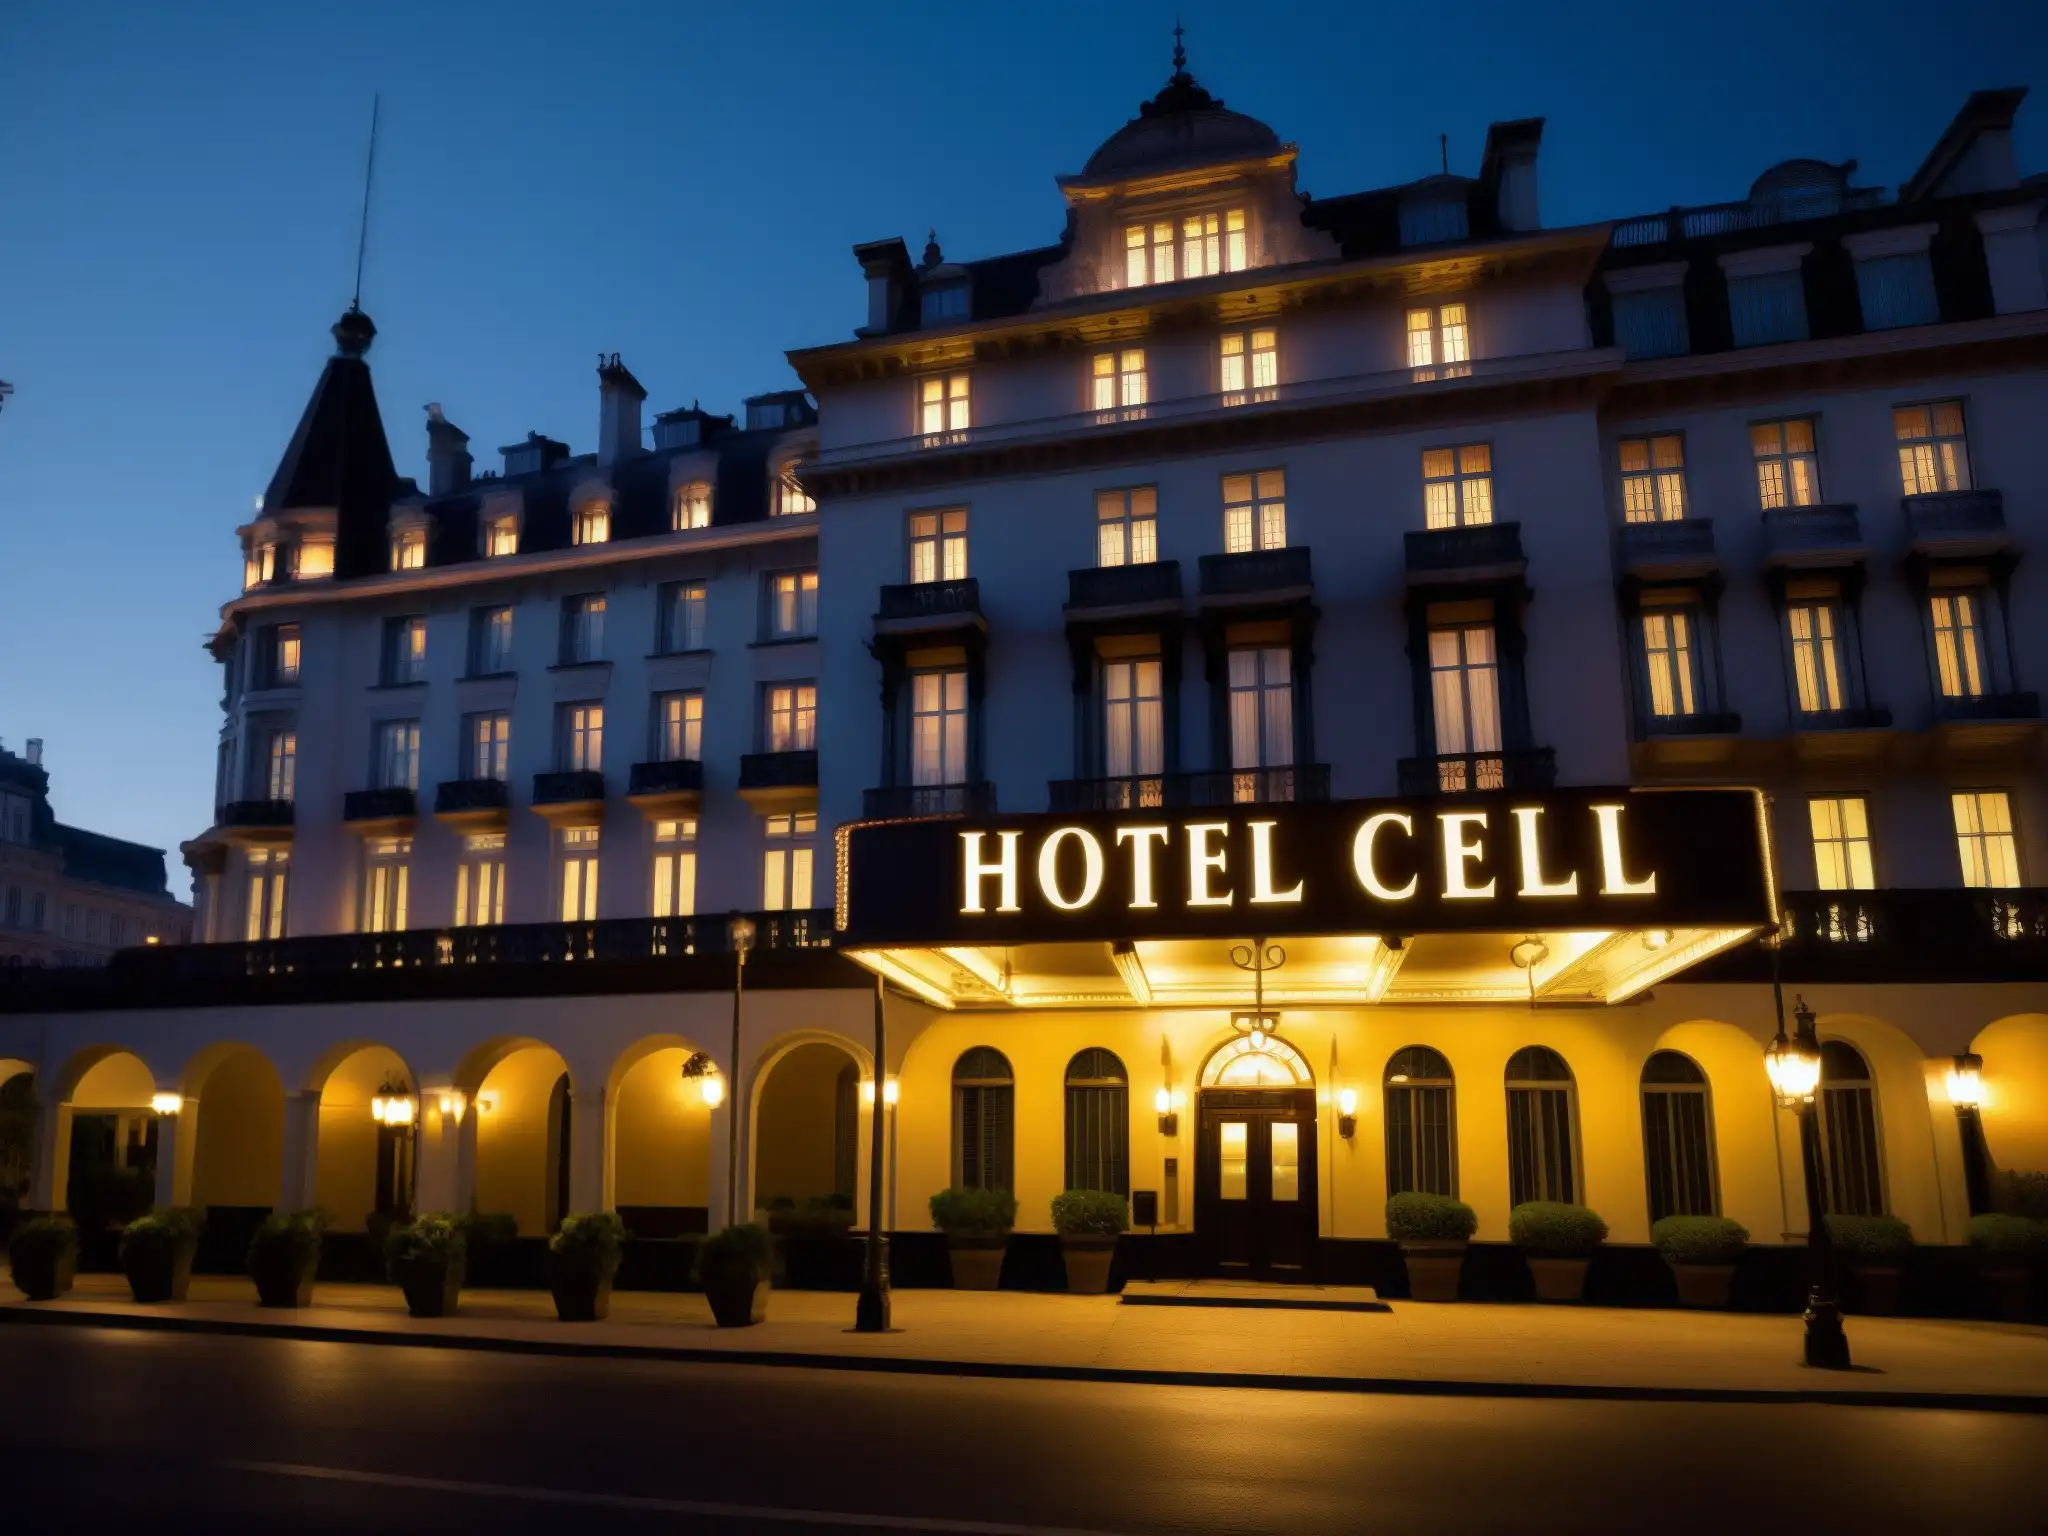 Imagen nocturna del Hotel Cecil con iluminación dramática, evocando la historia siniestra